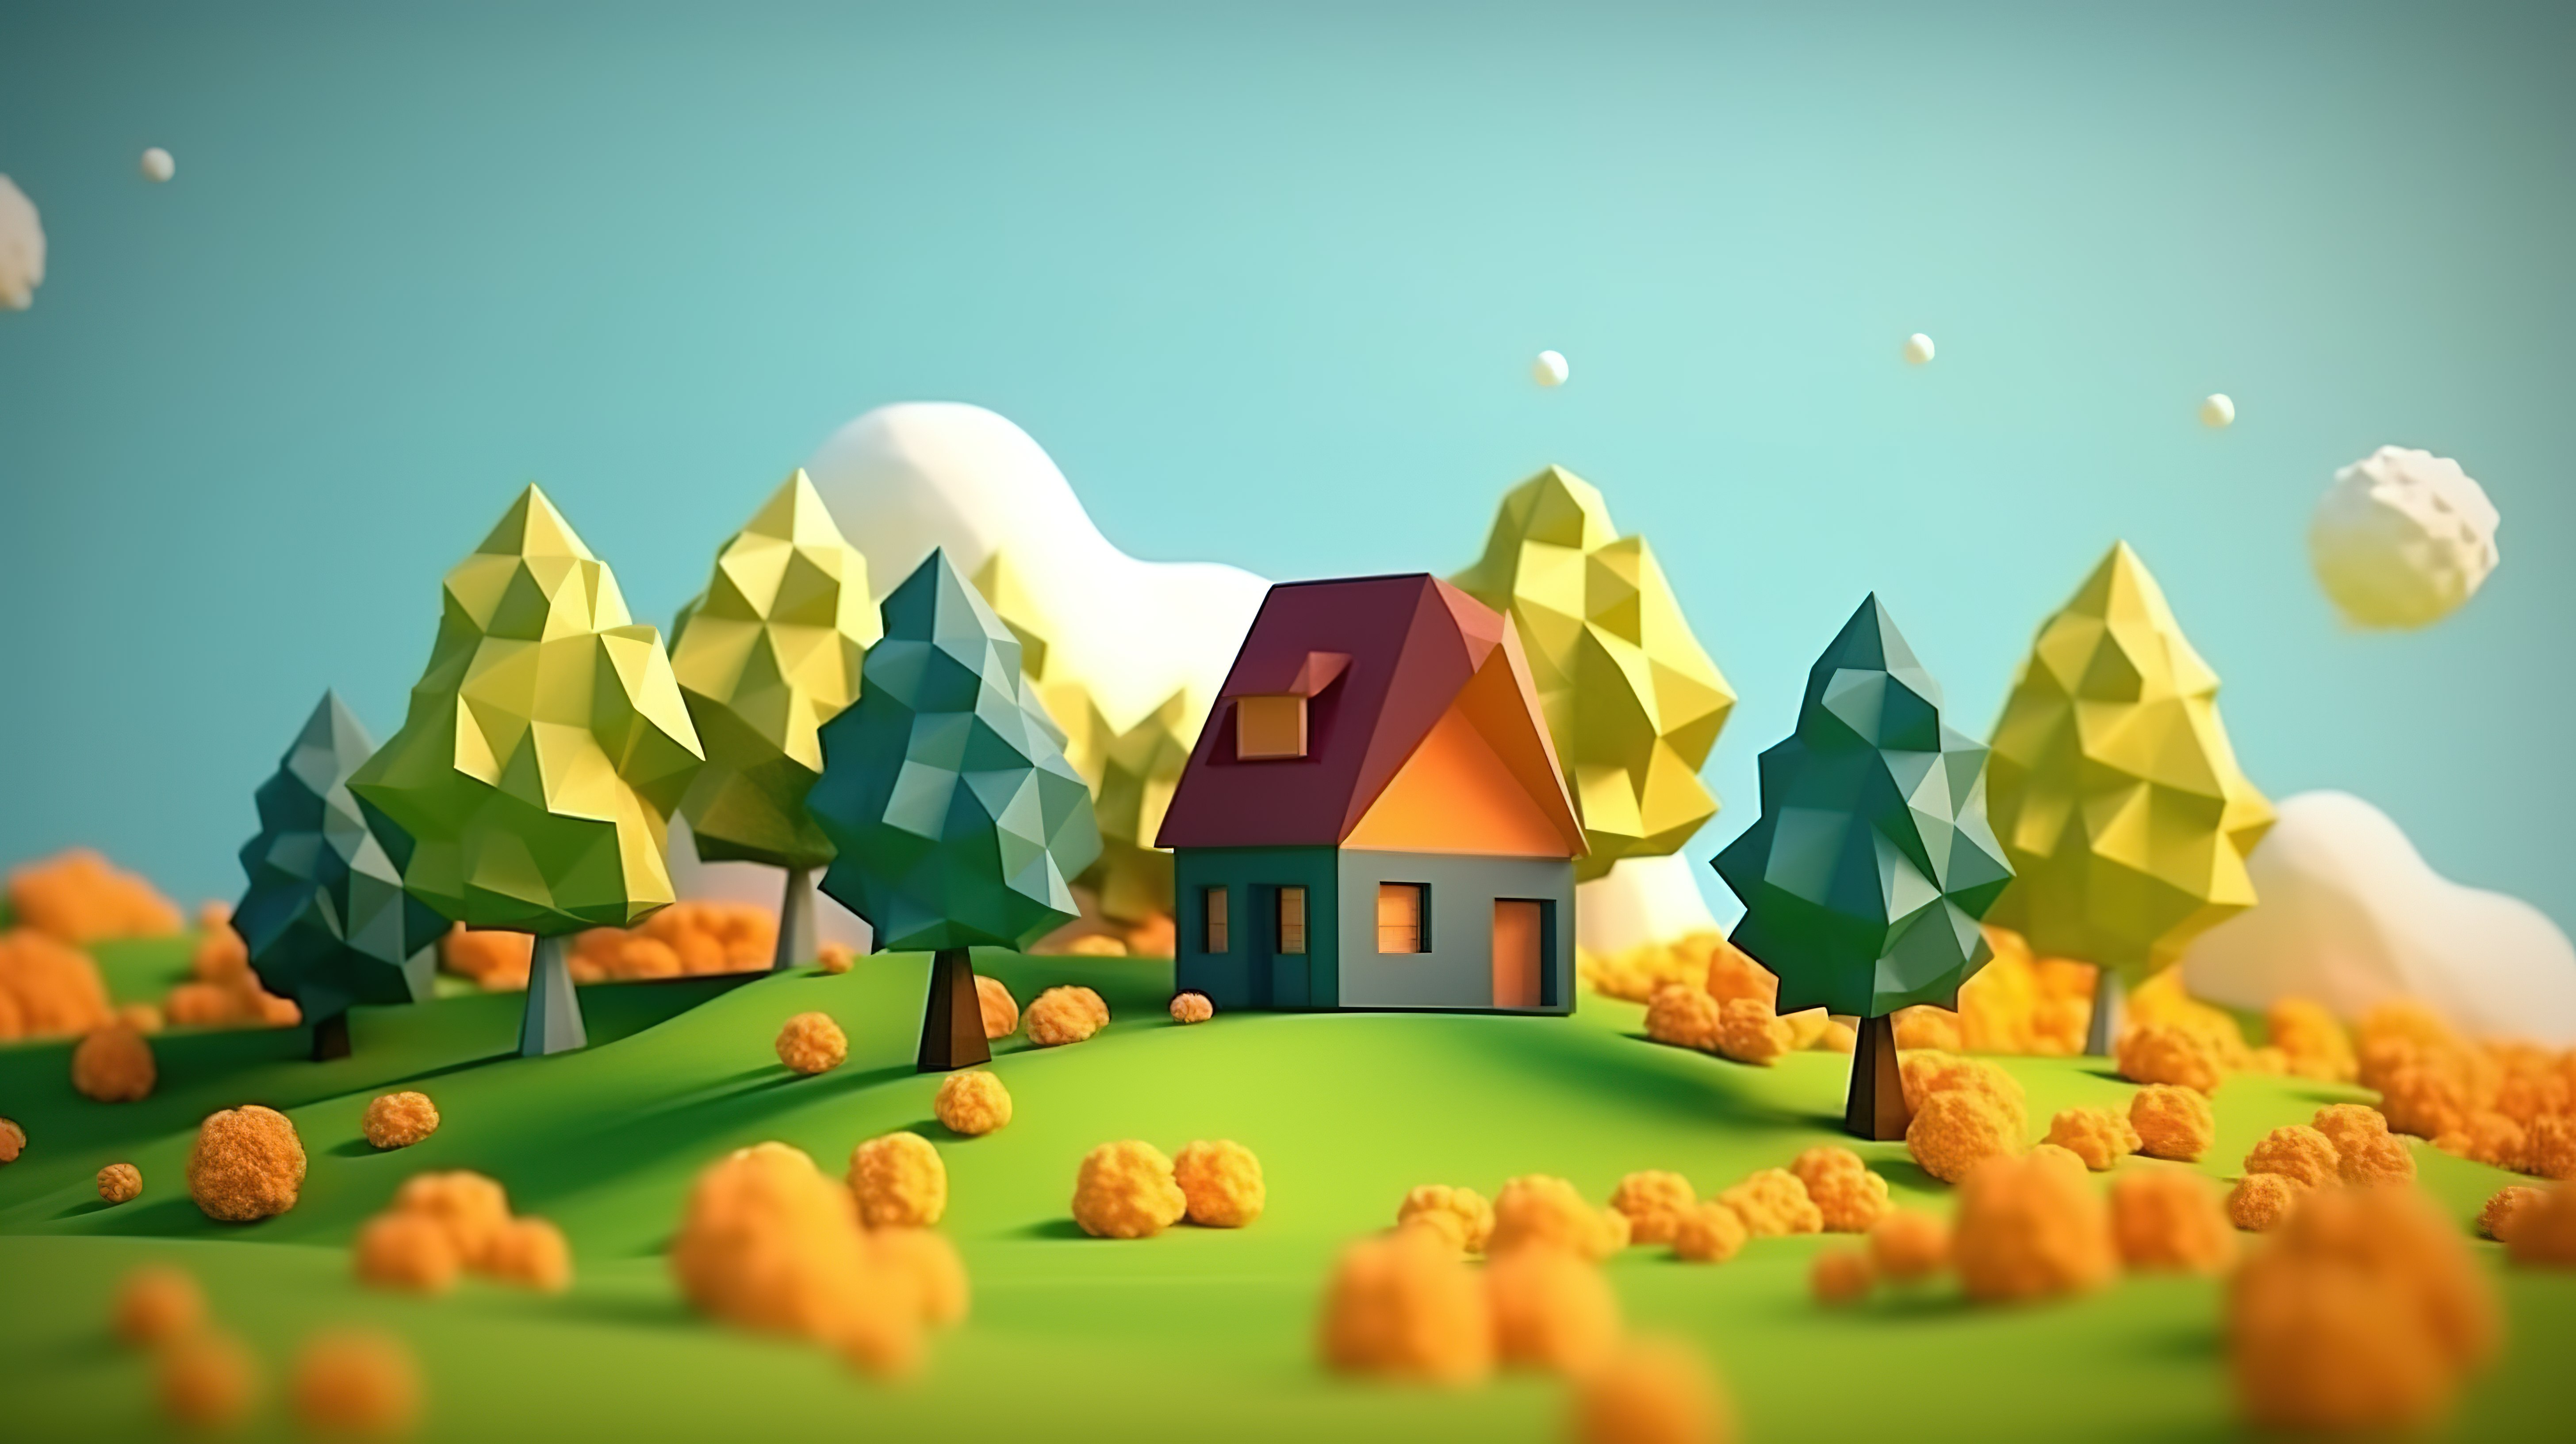 迷人的乡村场景与 3D 建模的多边形树木和房子图片